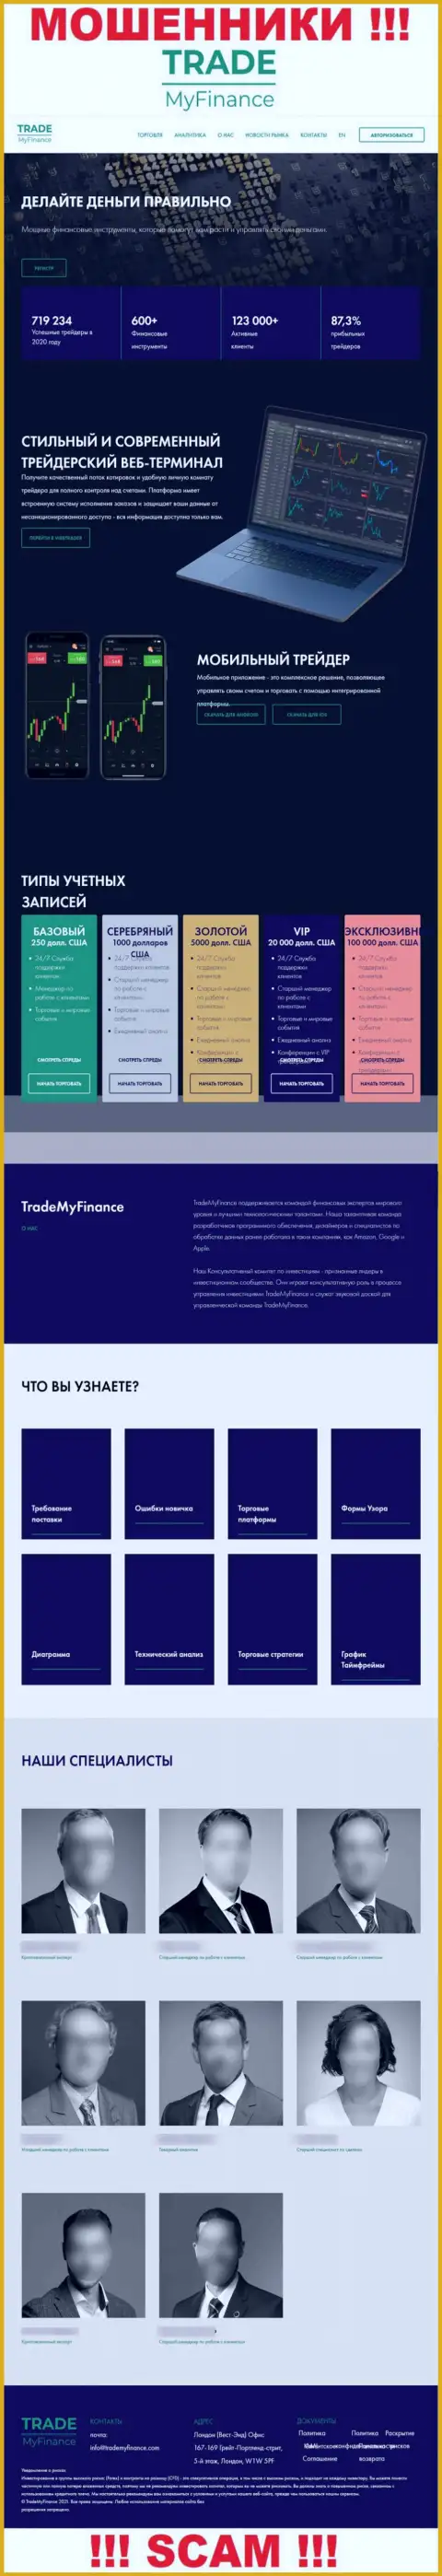 Не хотите стать потерпевшими от мошенников - не заходите на сайт компании TradeMy Finance - TradeMyFinance Com